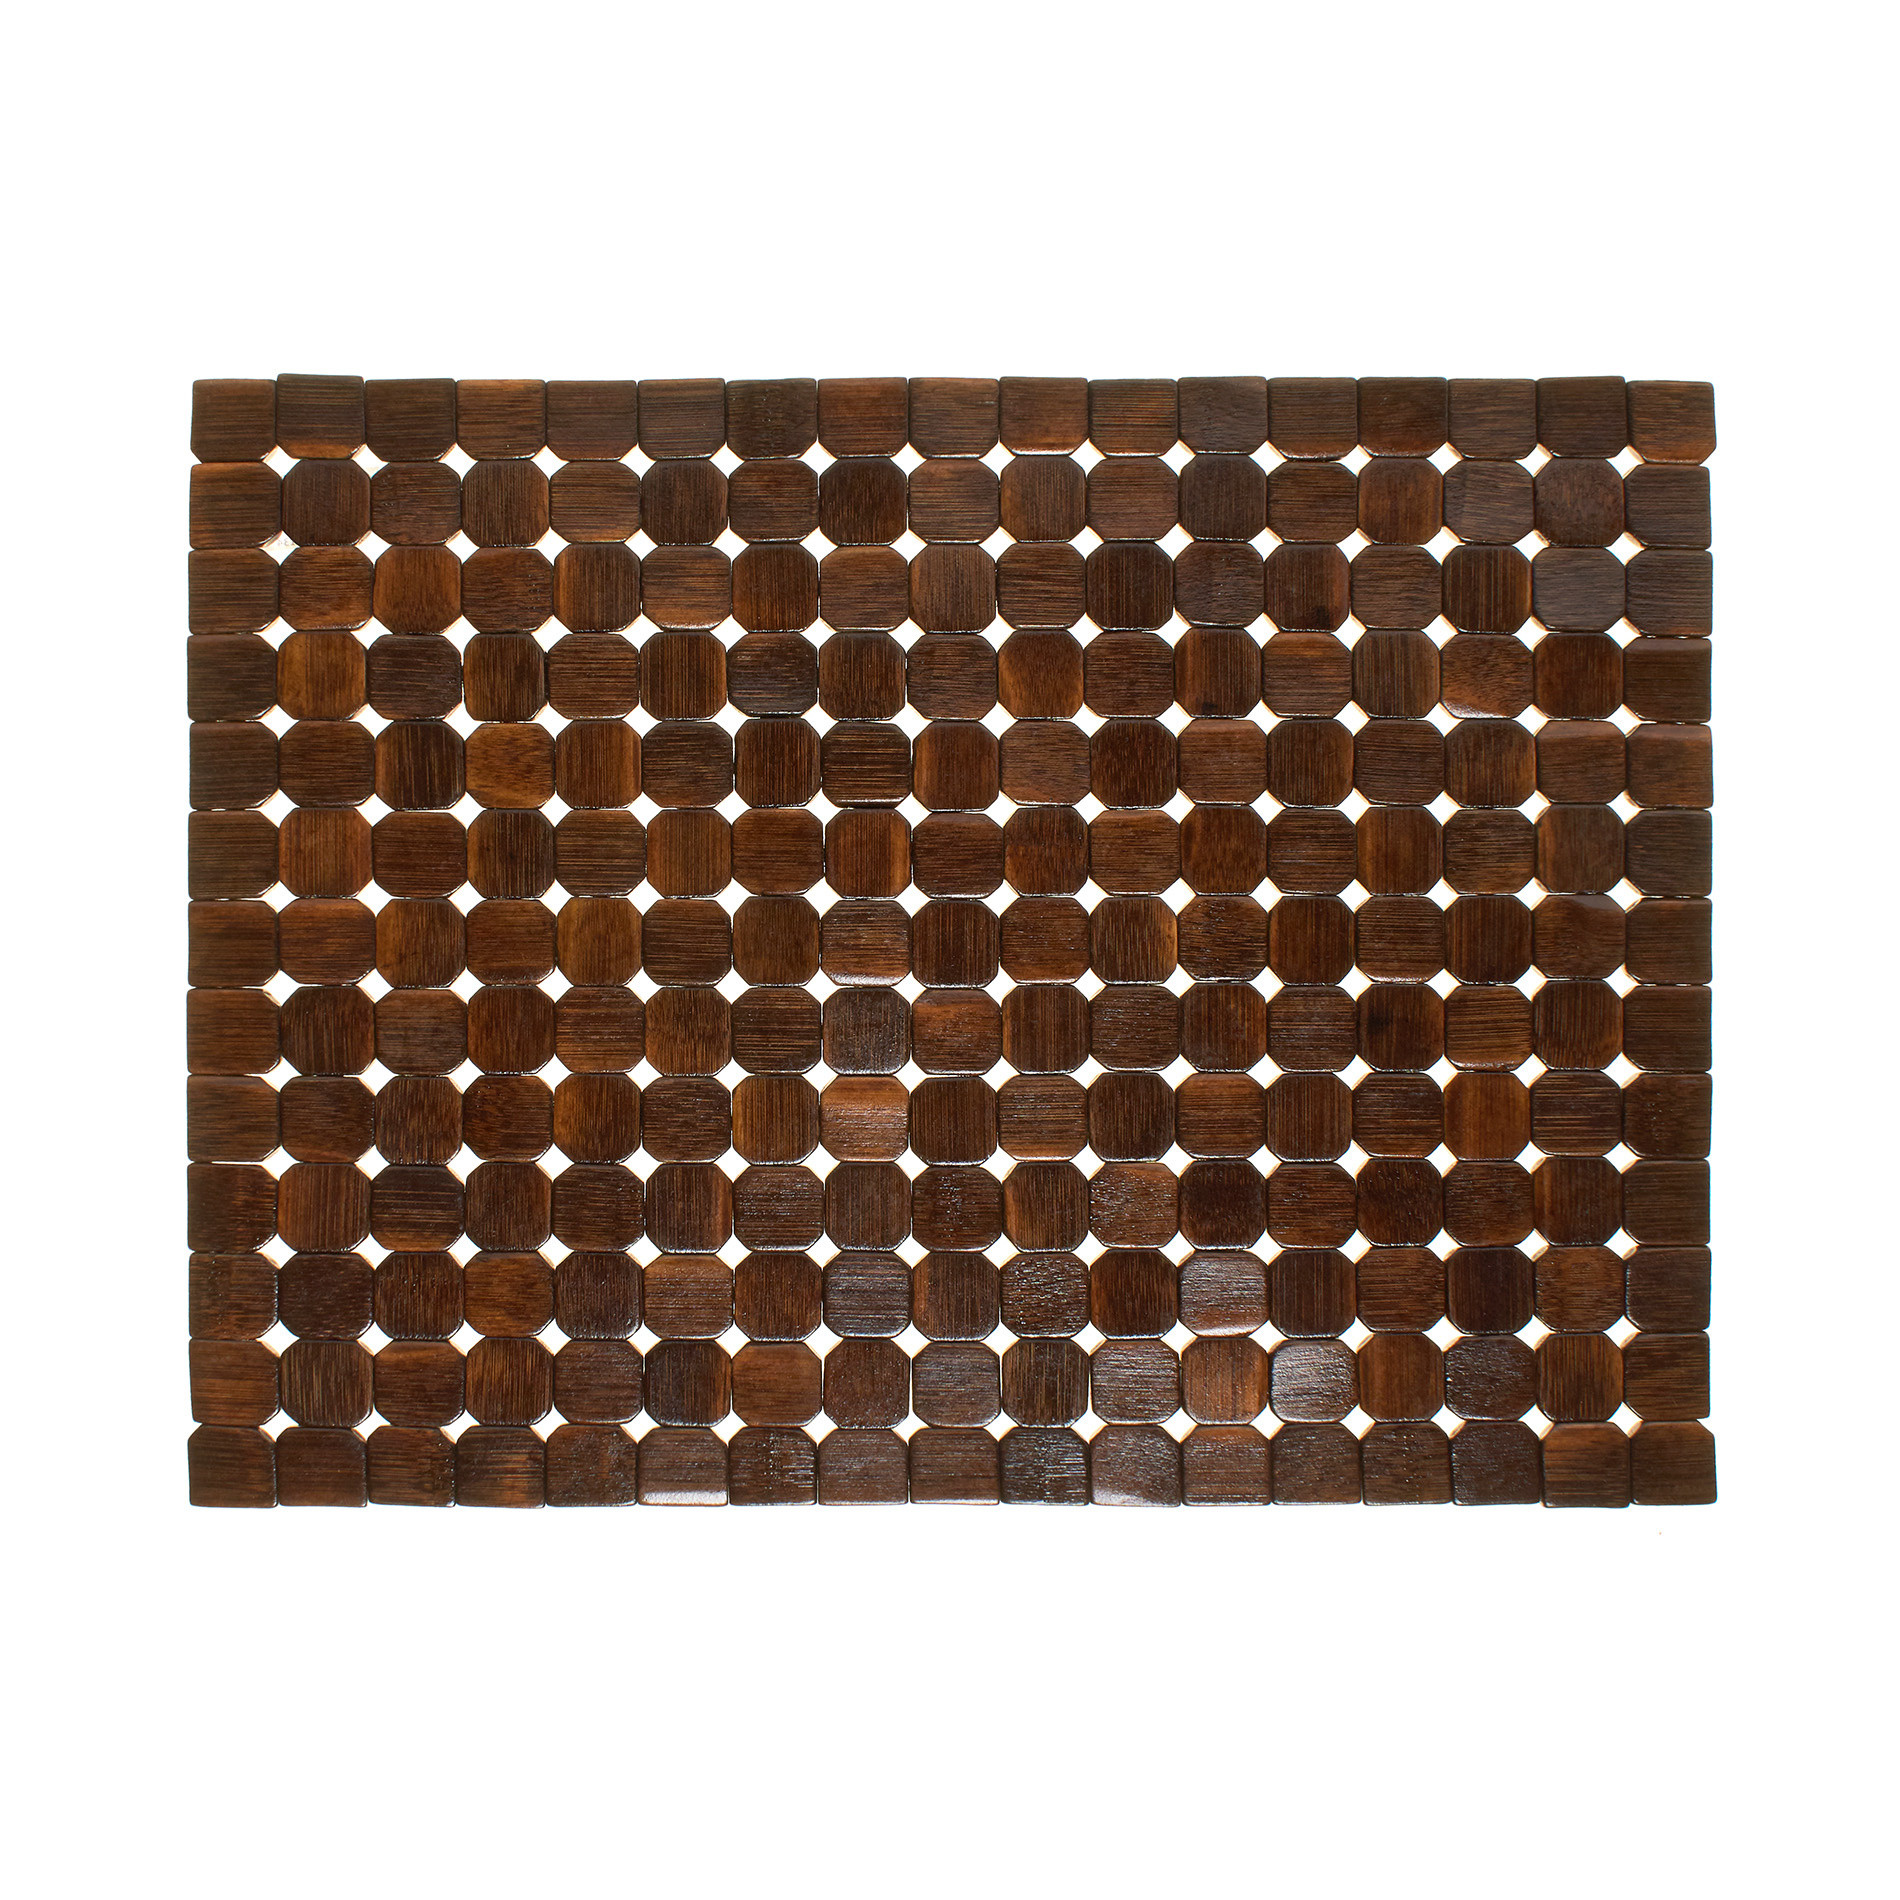 Расписной бамбуковый коврик для столовых приборов Coincasa, темно-коричневый подставка для столовых приборов вязание цвет белый ротанг